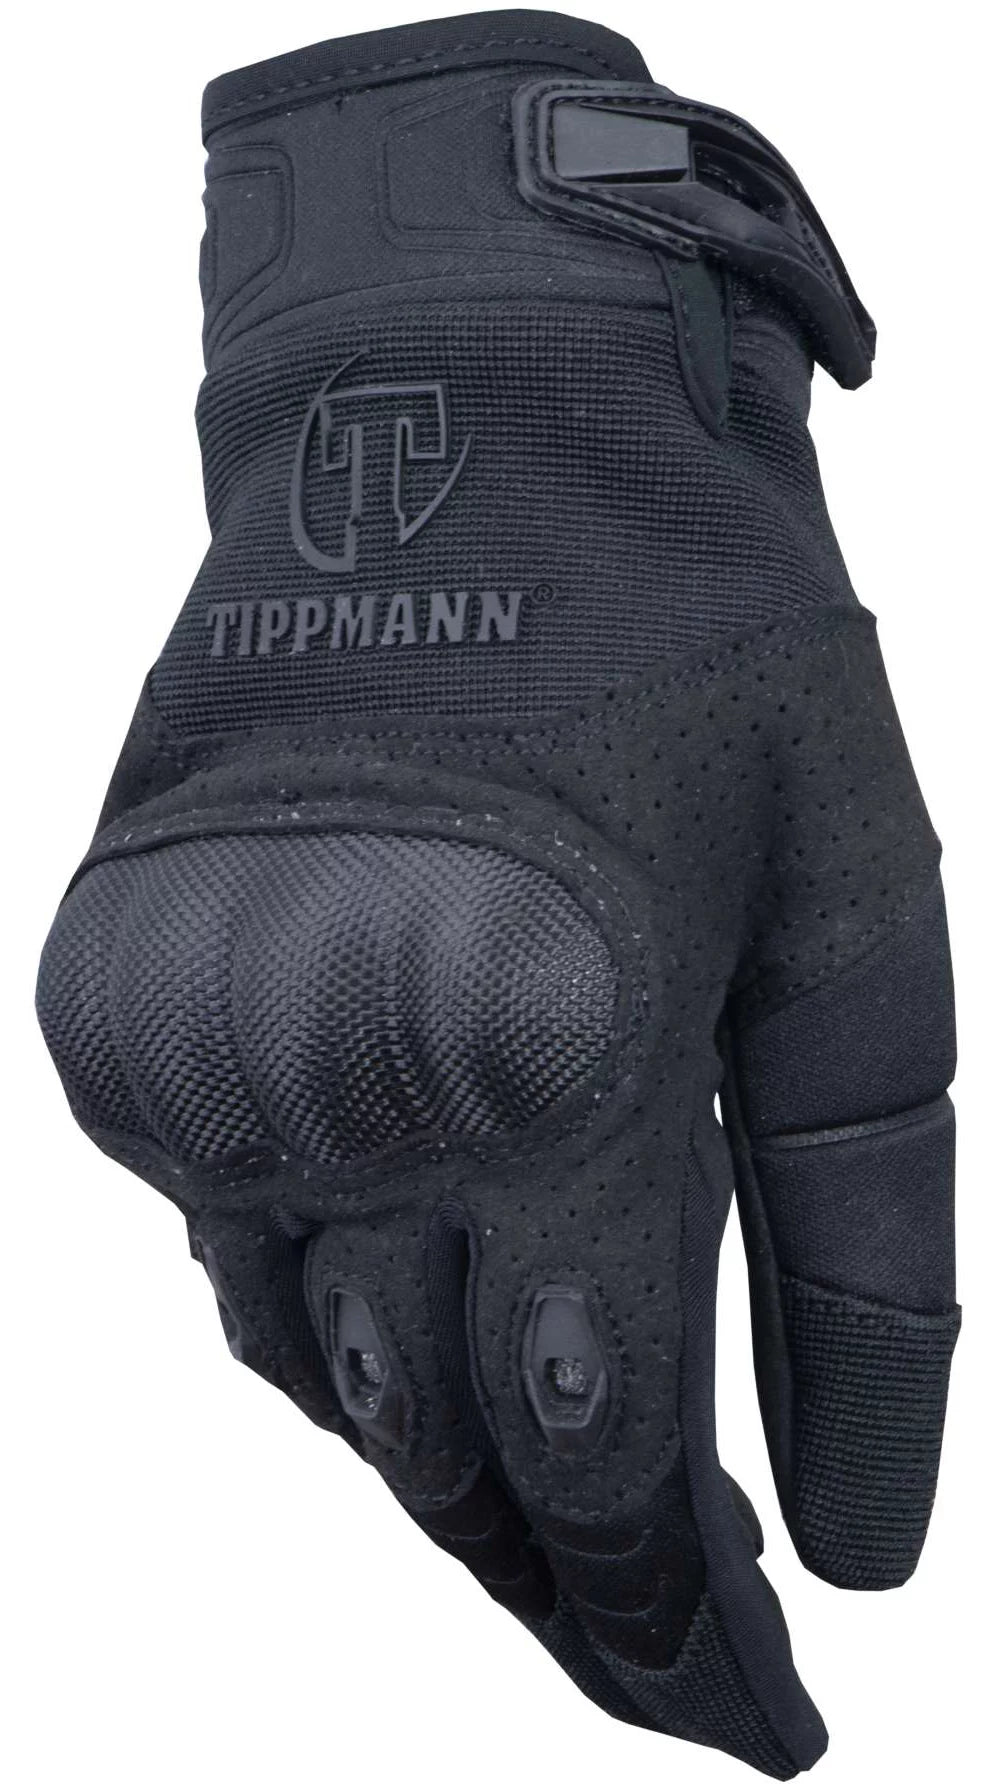 Tippmann Attack Tactical Glove